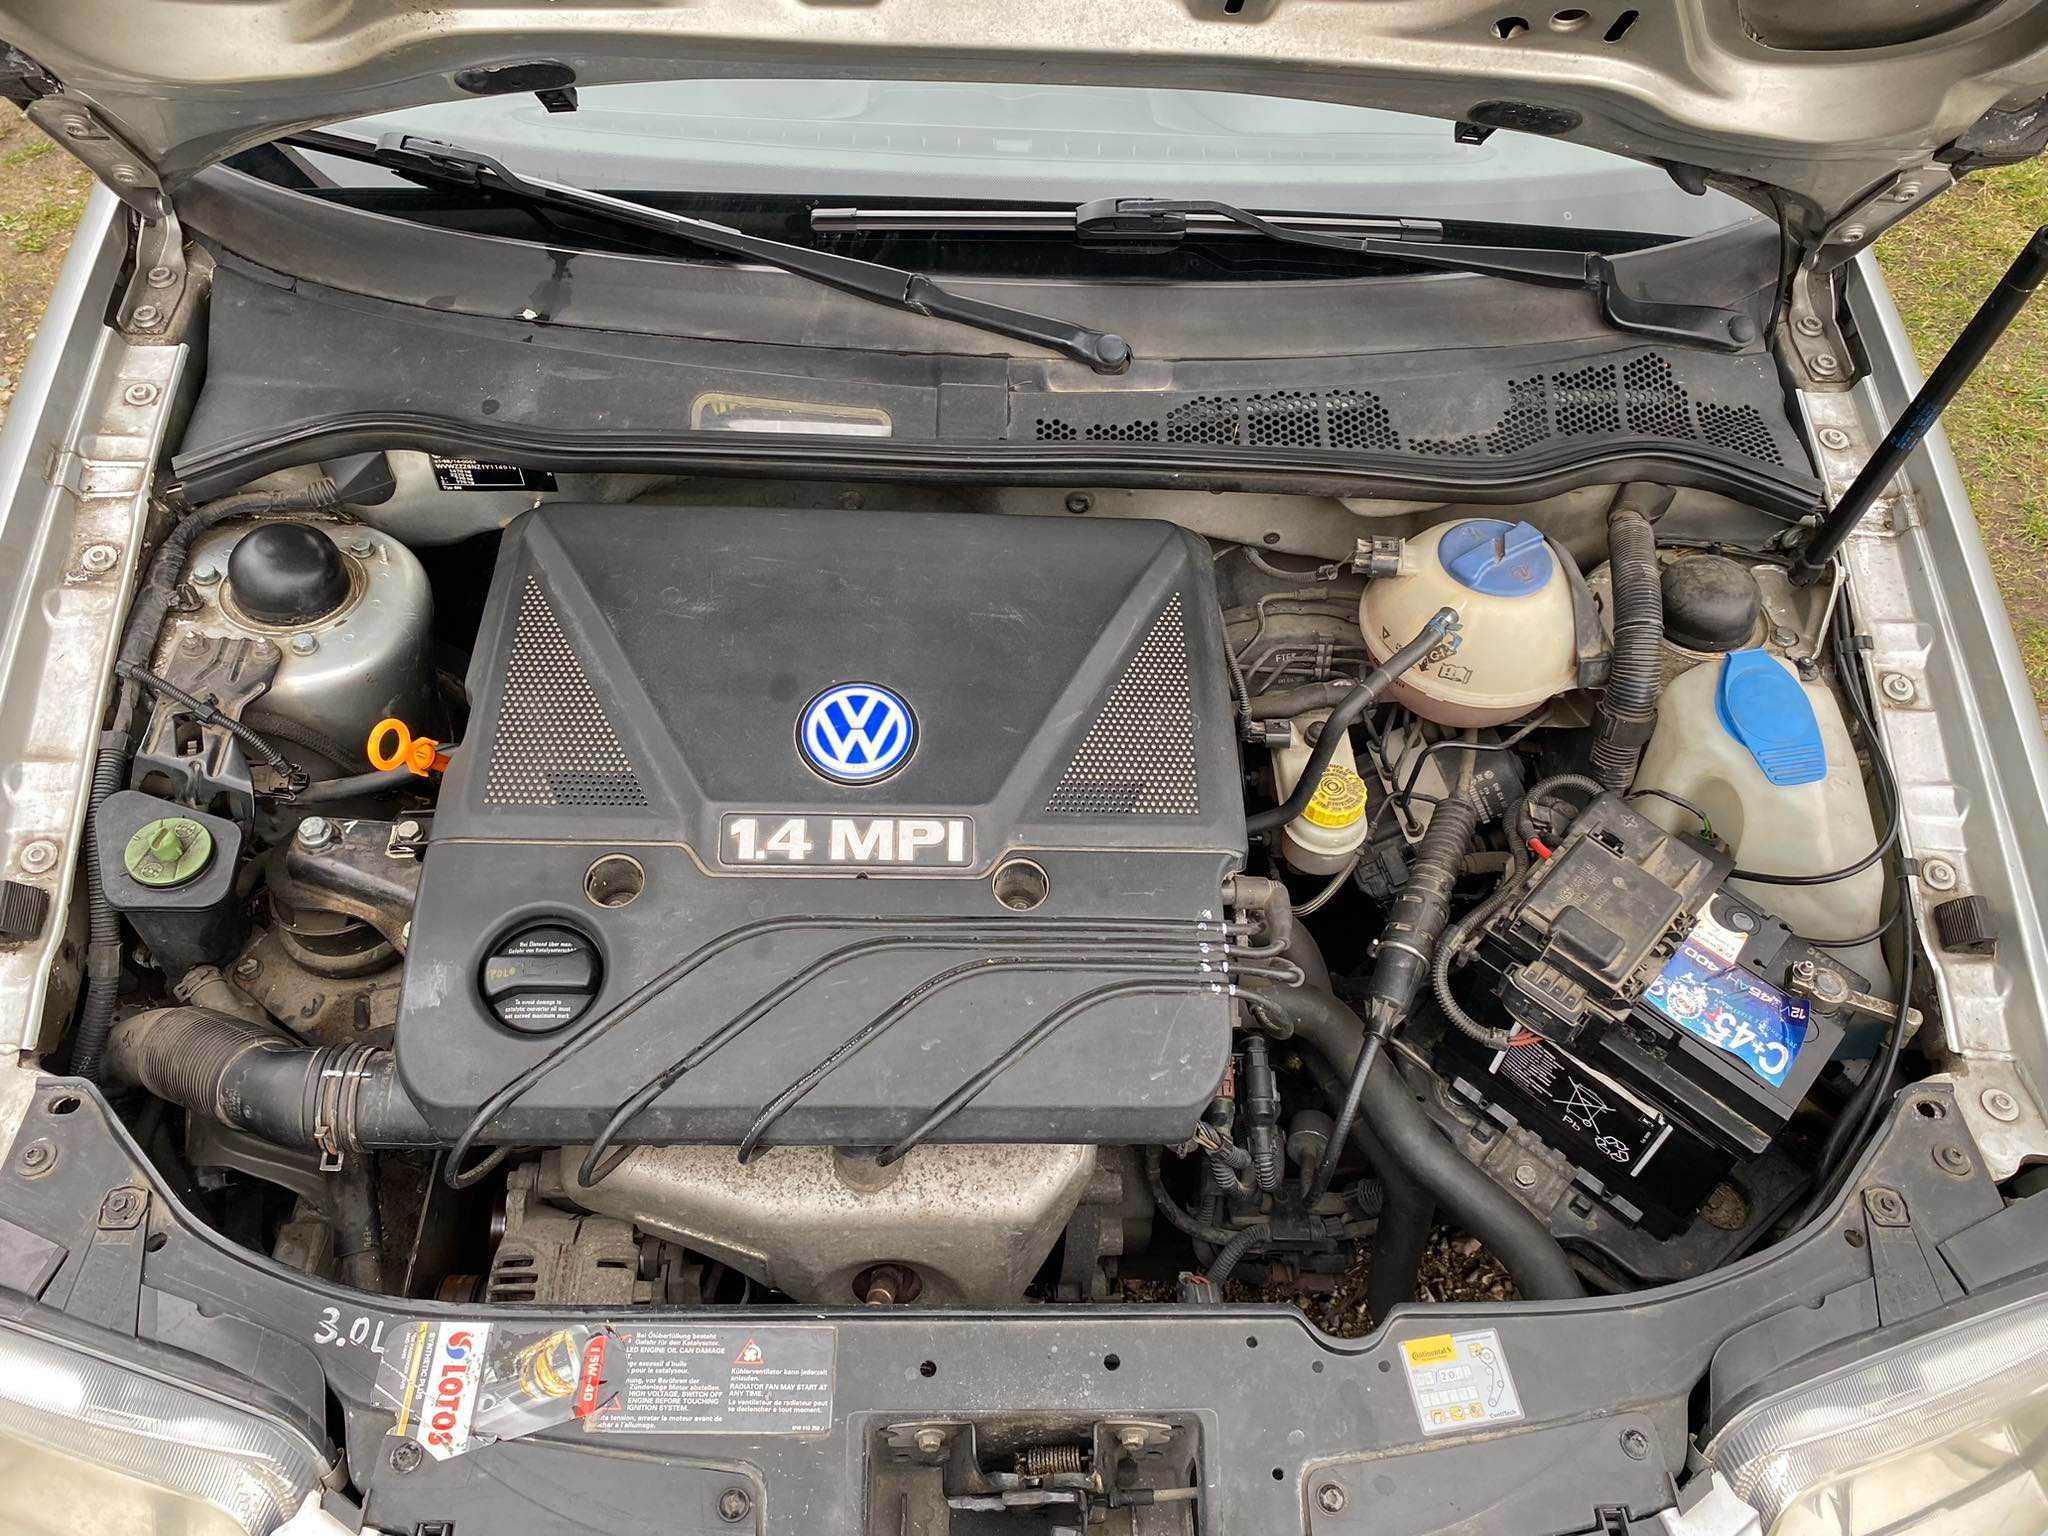 VW Polo 1,4 MPI Benzyna 2000 r. 5-drzwi